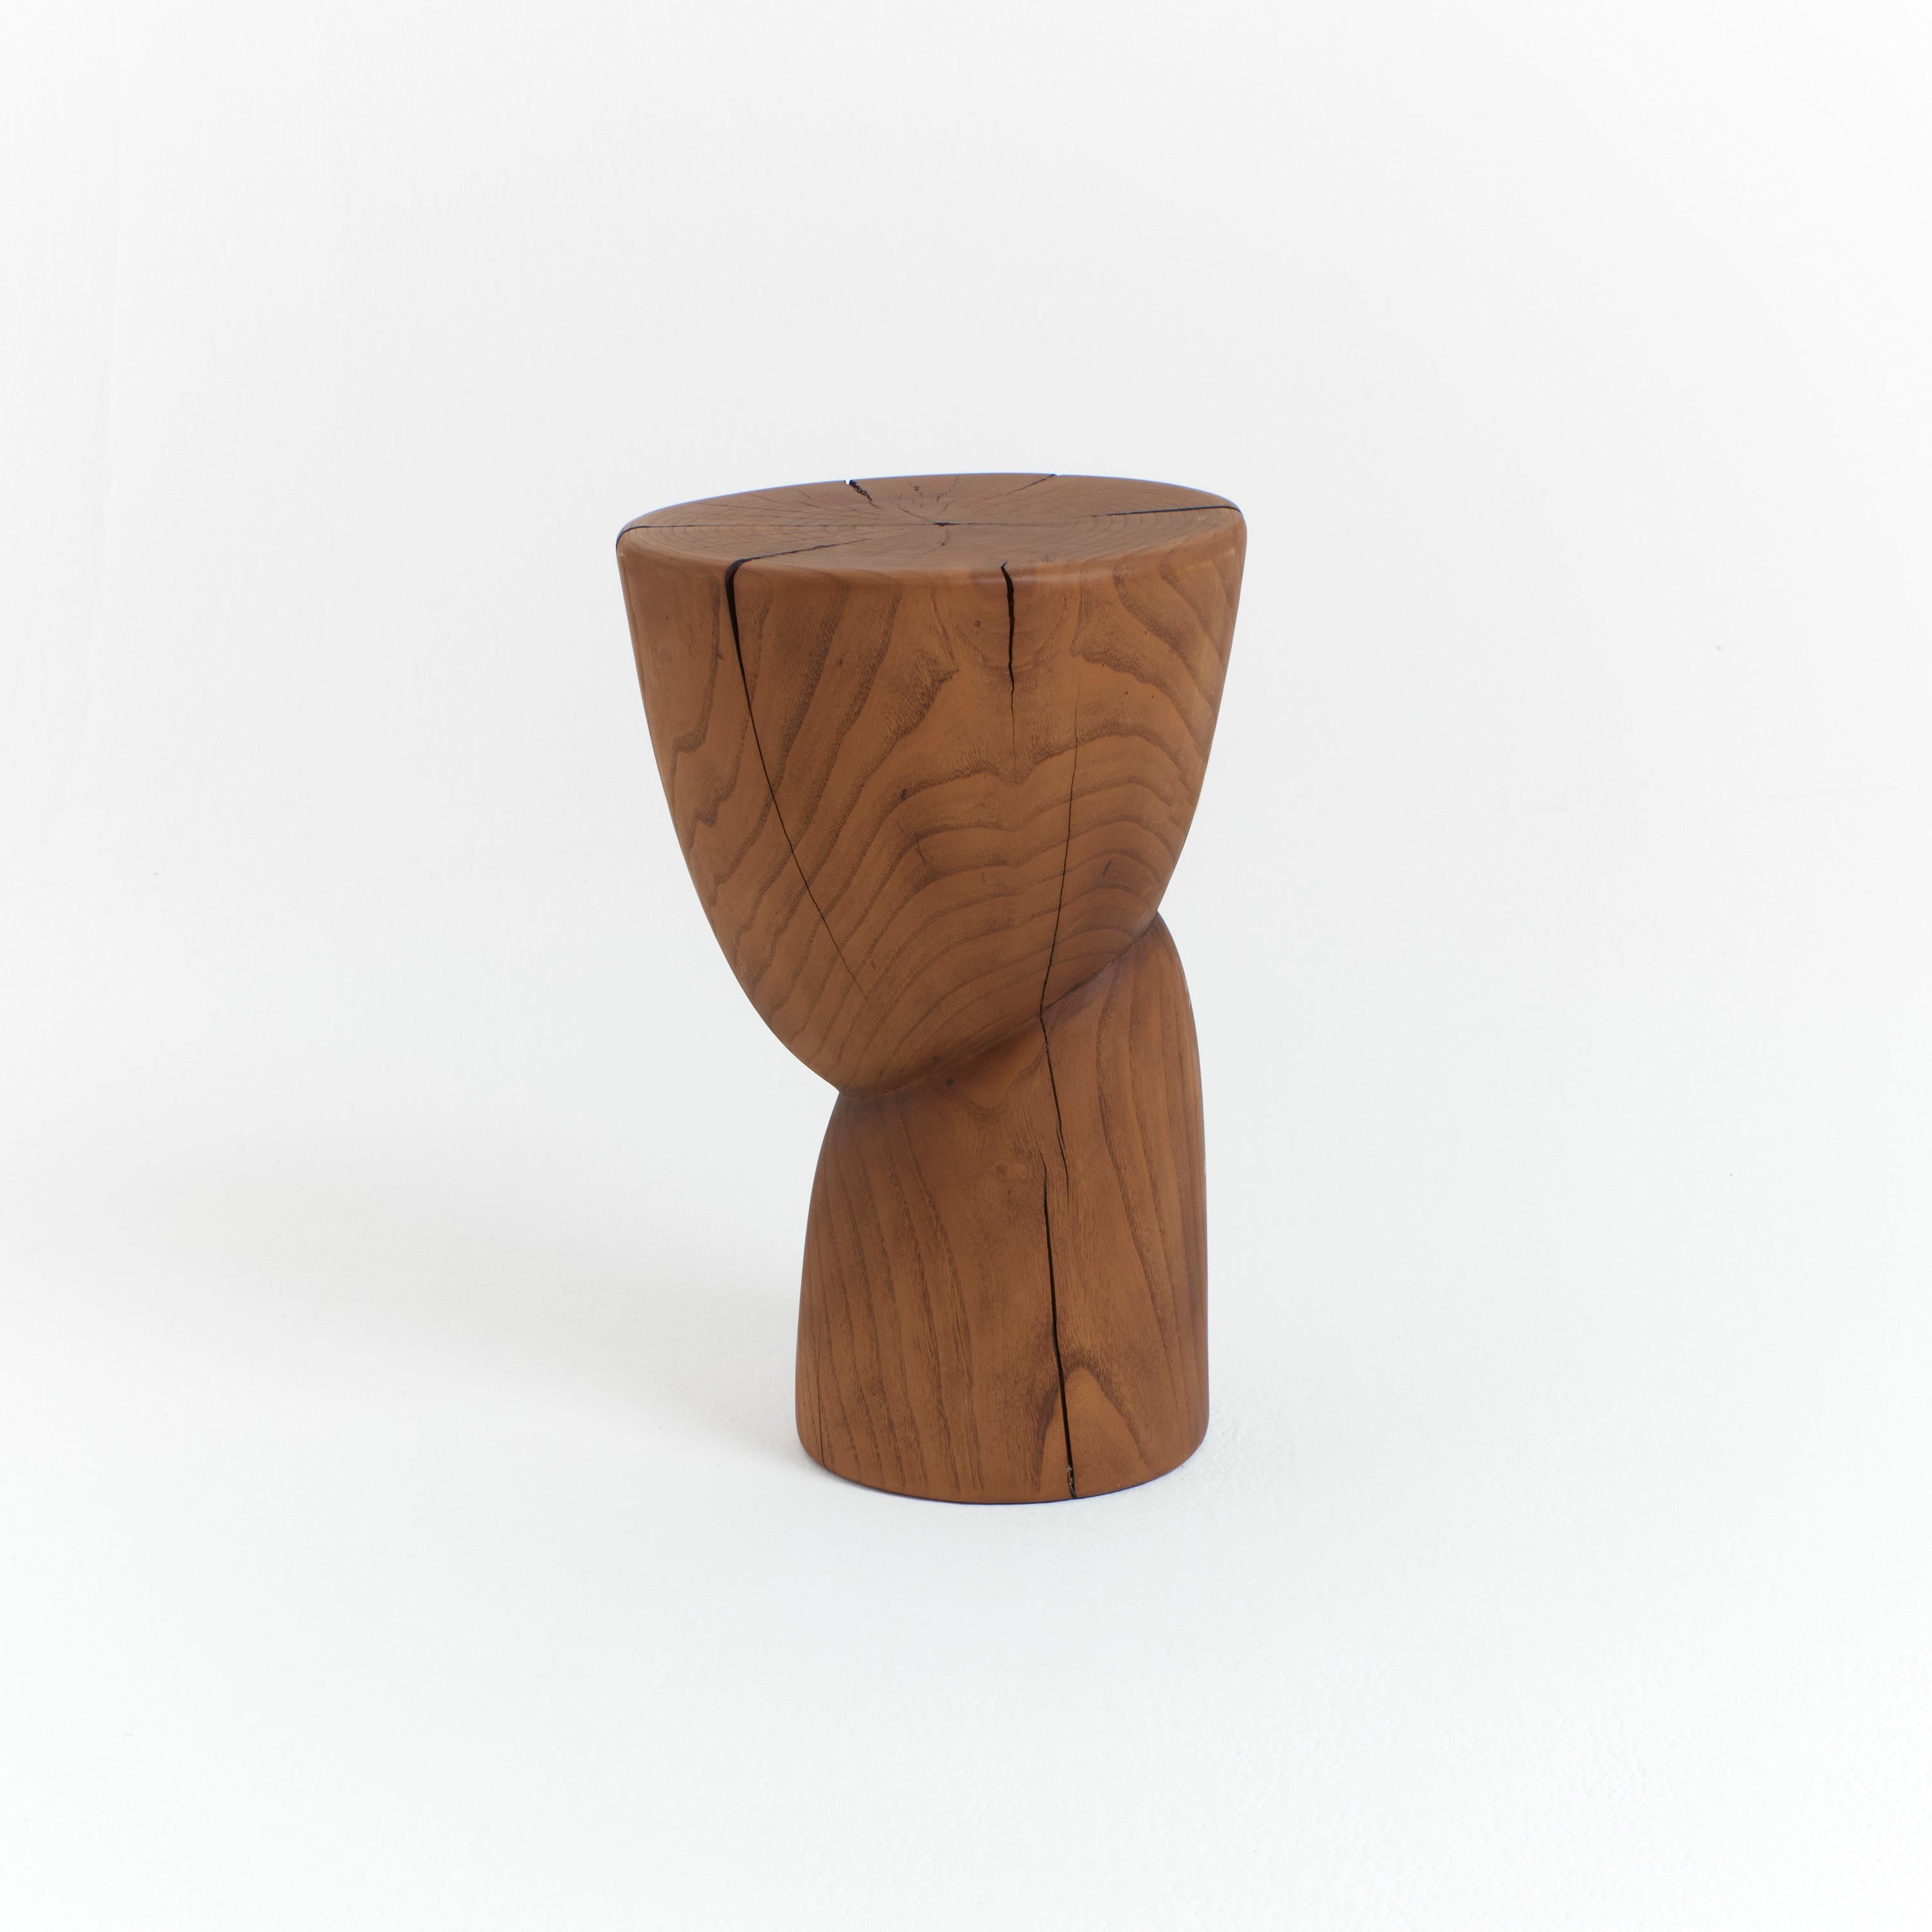 Table d'appoint en bois massif avec une finition huilée.
Conçu par Project 213A en 2020 
Cette table d'appoint sculpturale est sculptée à la main par des artisans locaux au Portugal en utilisant du châtaignier massif, ce qui fait ressortir le